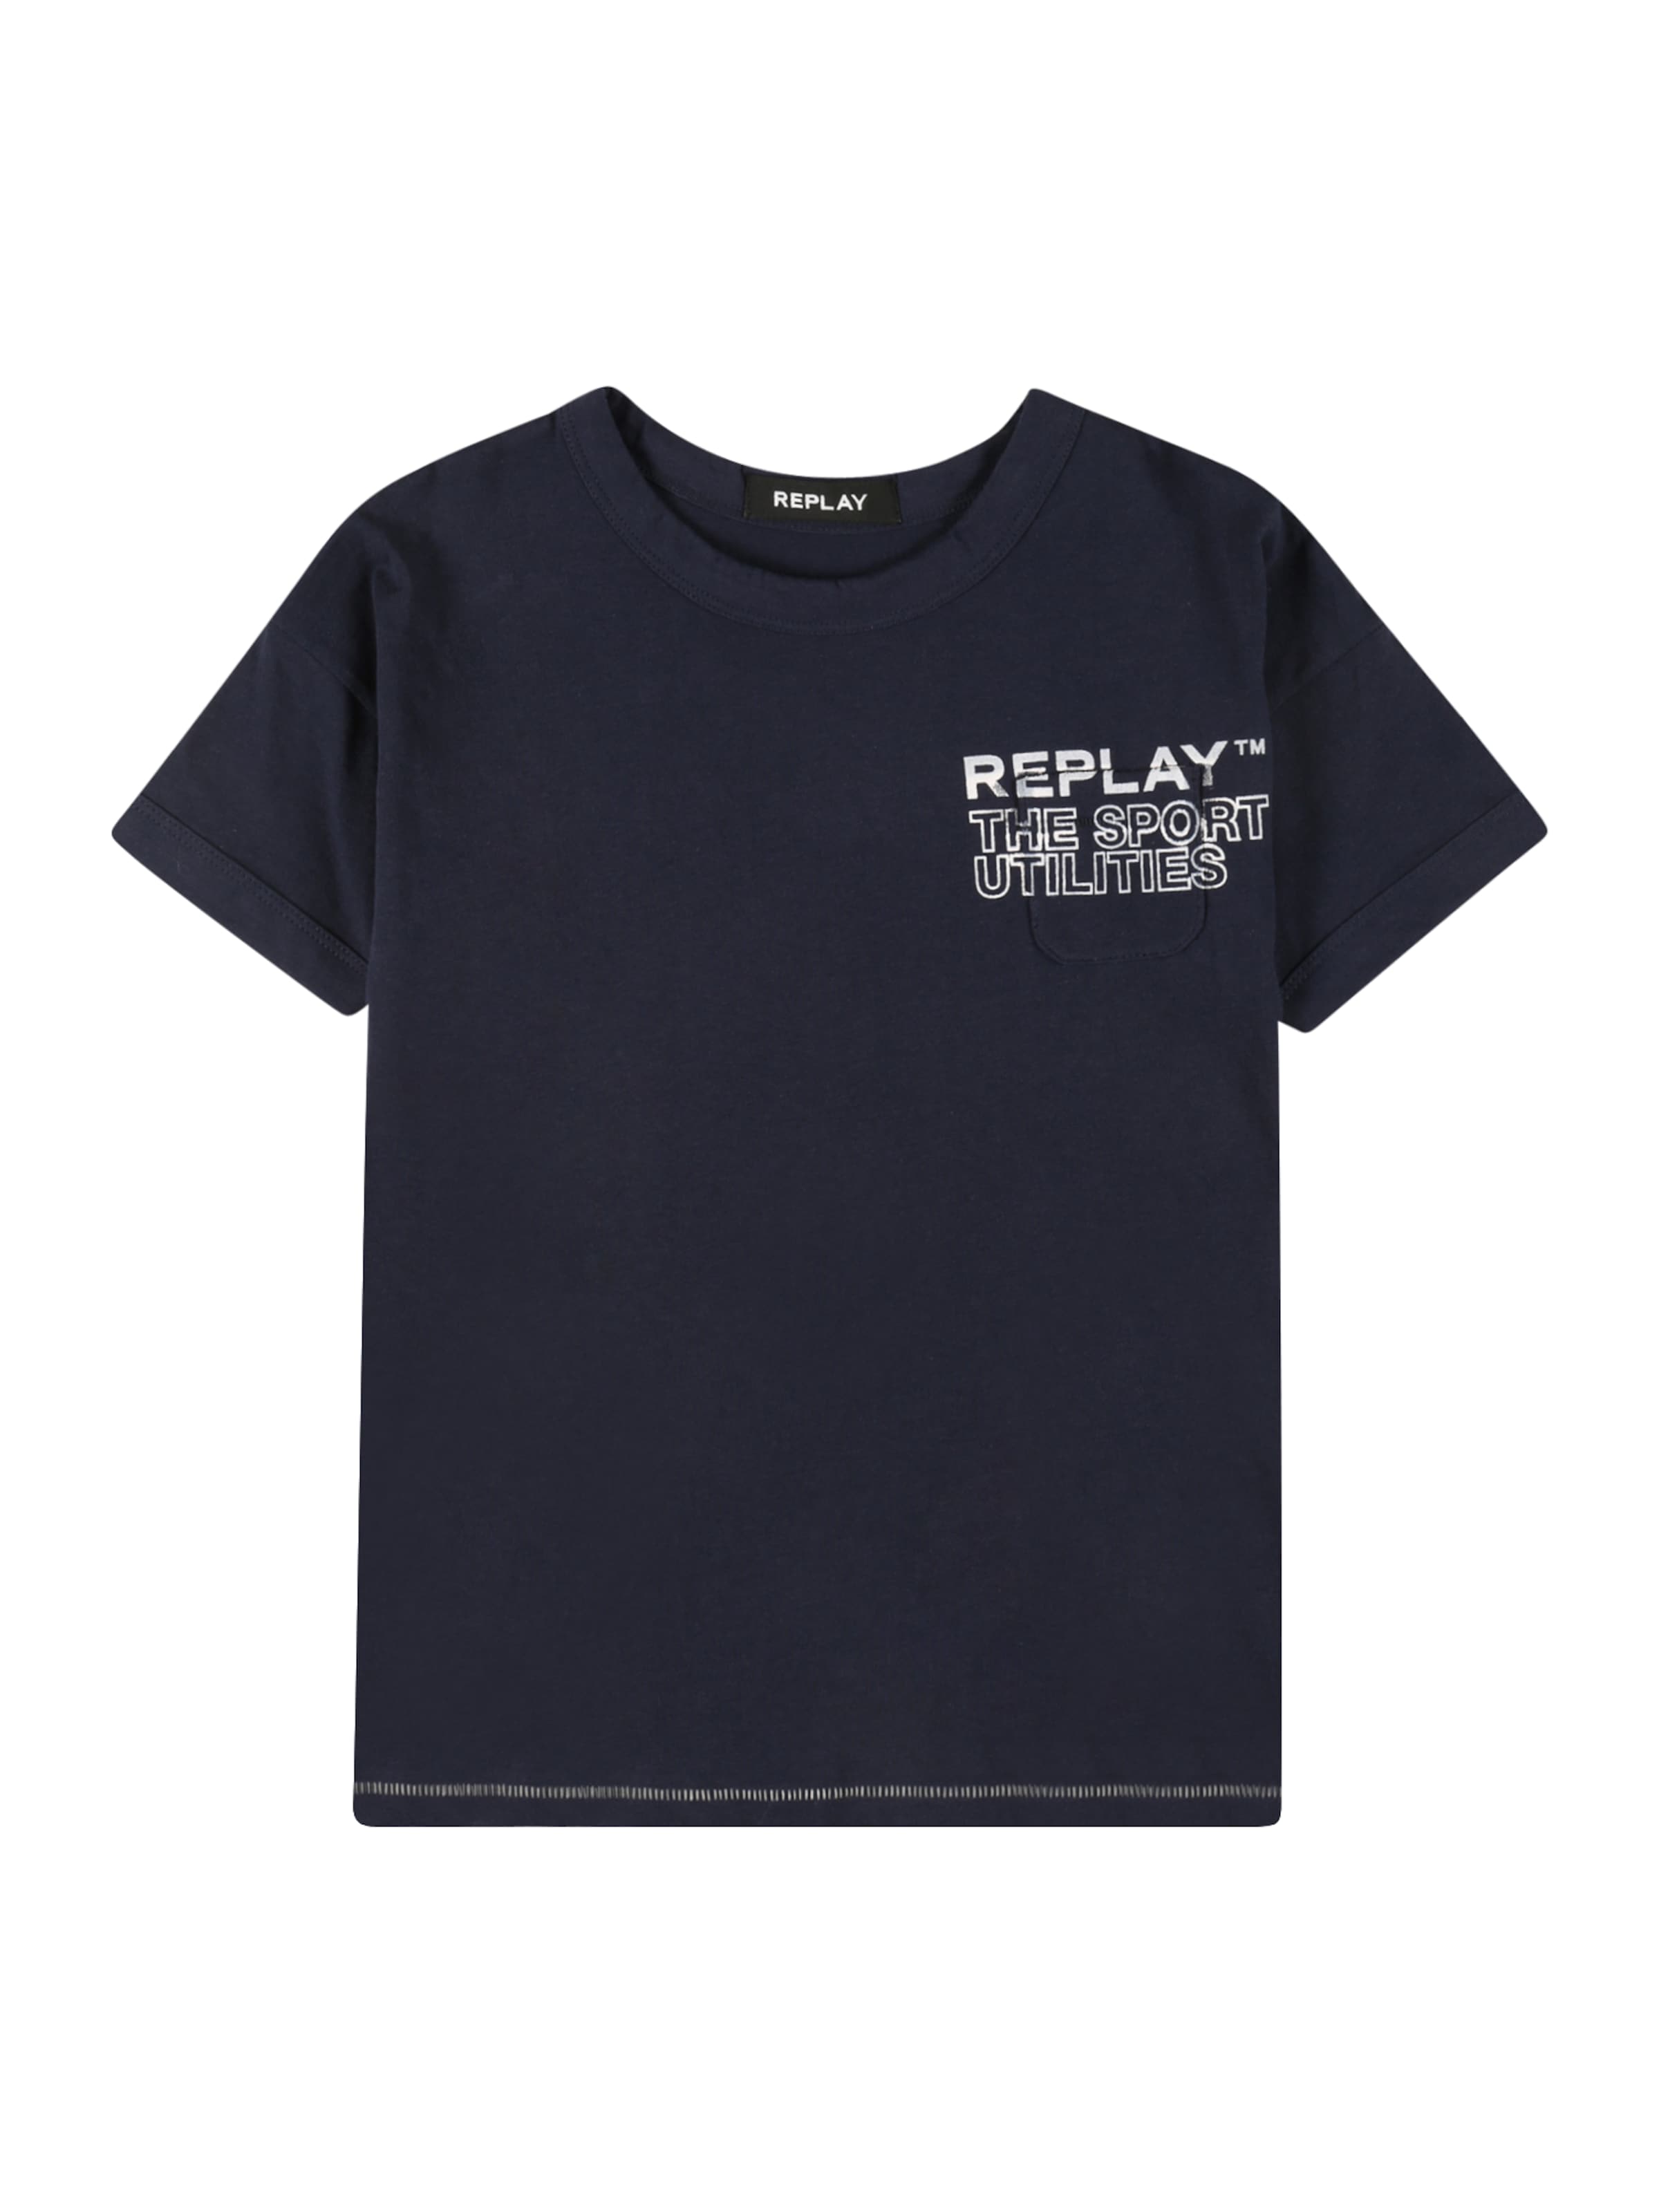 Enfants T-Shirt REPLAY en Bleu Marine, Bleu Ciel 